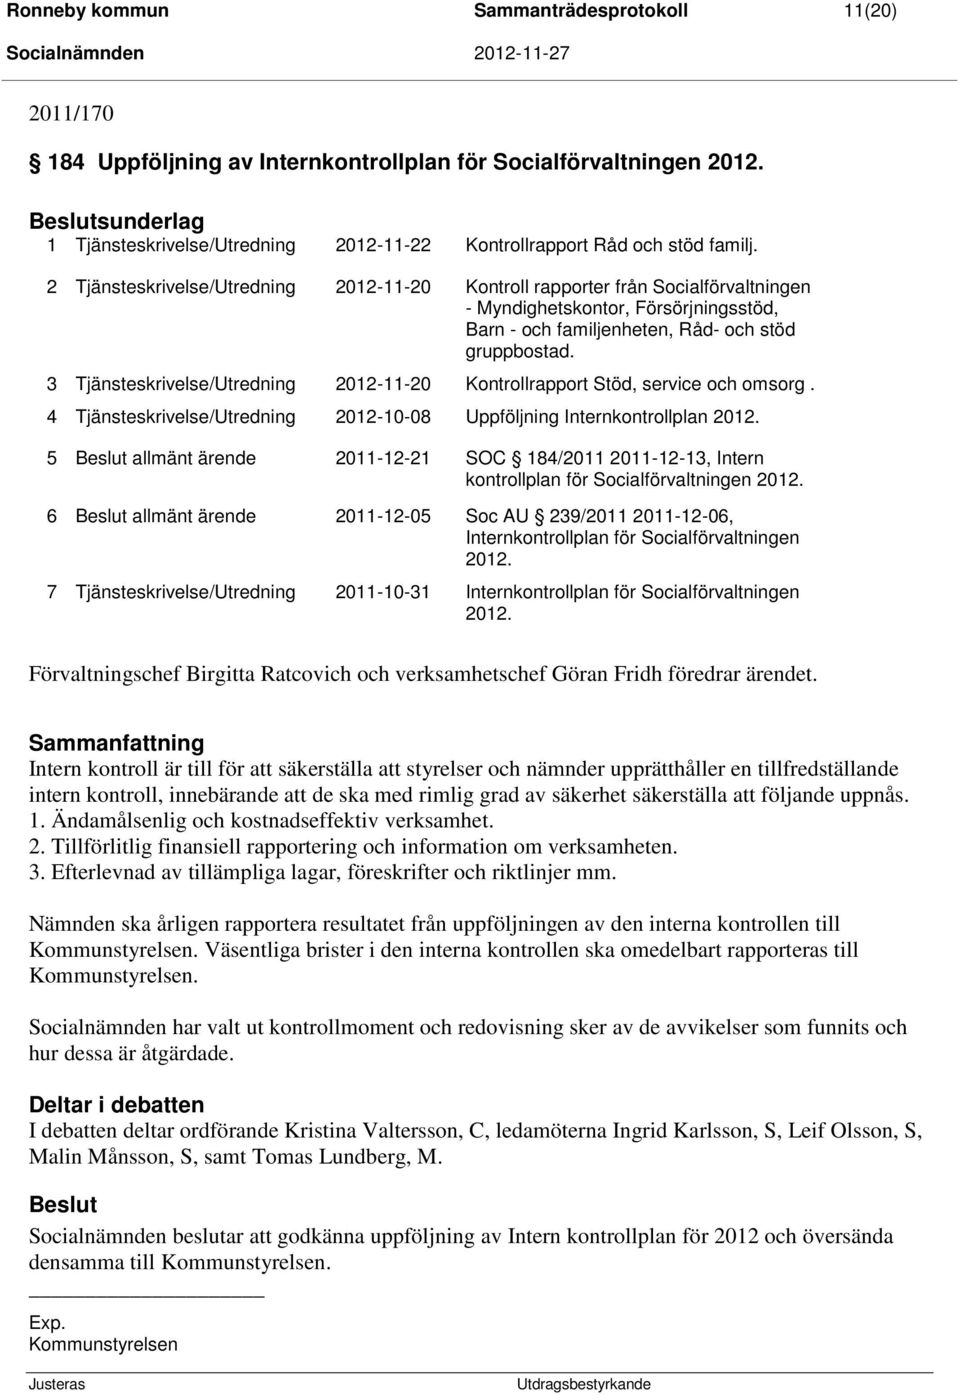 2 Tjänsteskrivelse/Utredning 2012-11-20 Kontroll rapporter från Socialförvaltningen - Myndighetskontor, Försörjningsstöd, Barn - och familjenheten, Råd- och stöd gruppbostad.